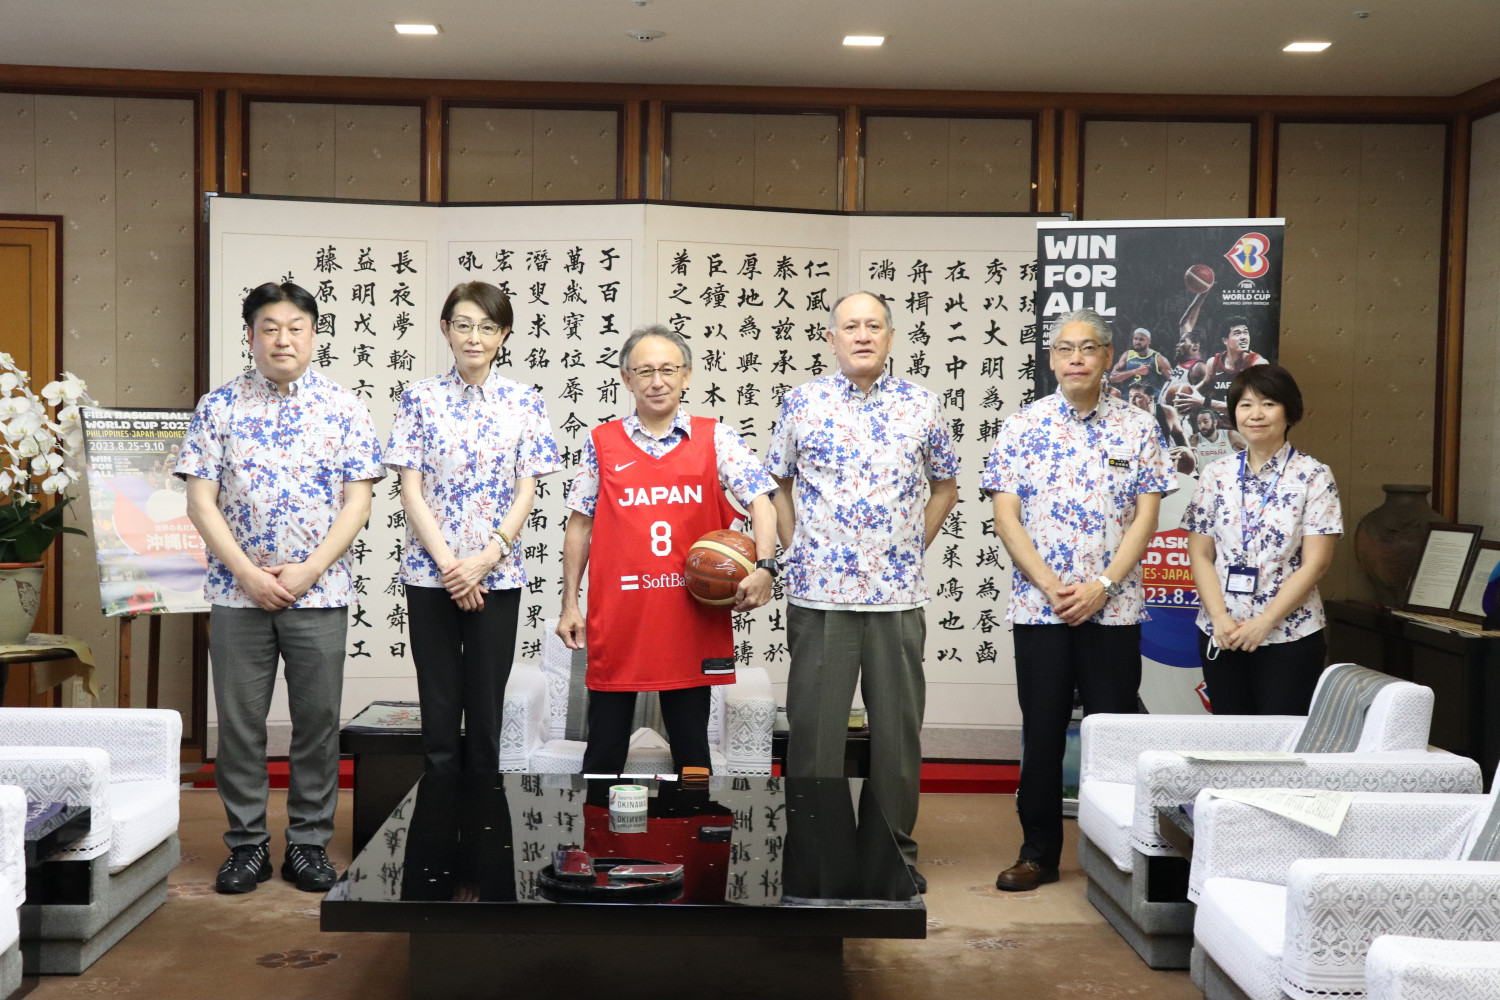 来年8月に Fibaバスケットボールワールドカップ23 が沖縄で開催されます 沖縄観光情報webサイト おきなわ物語